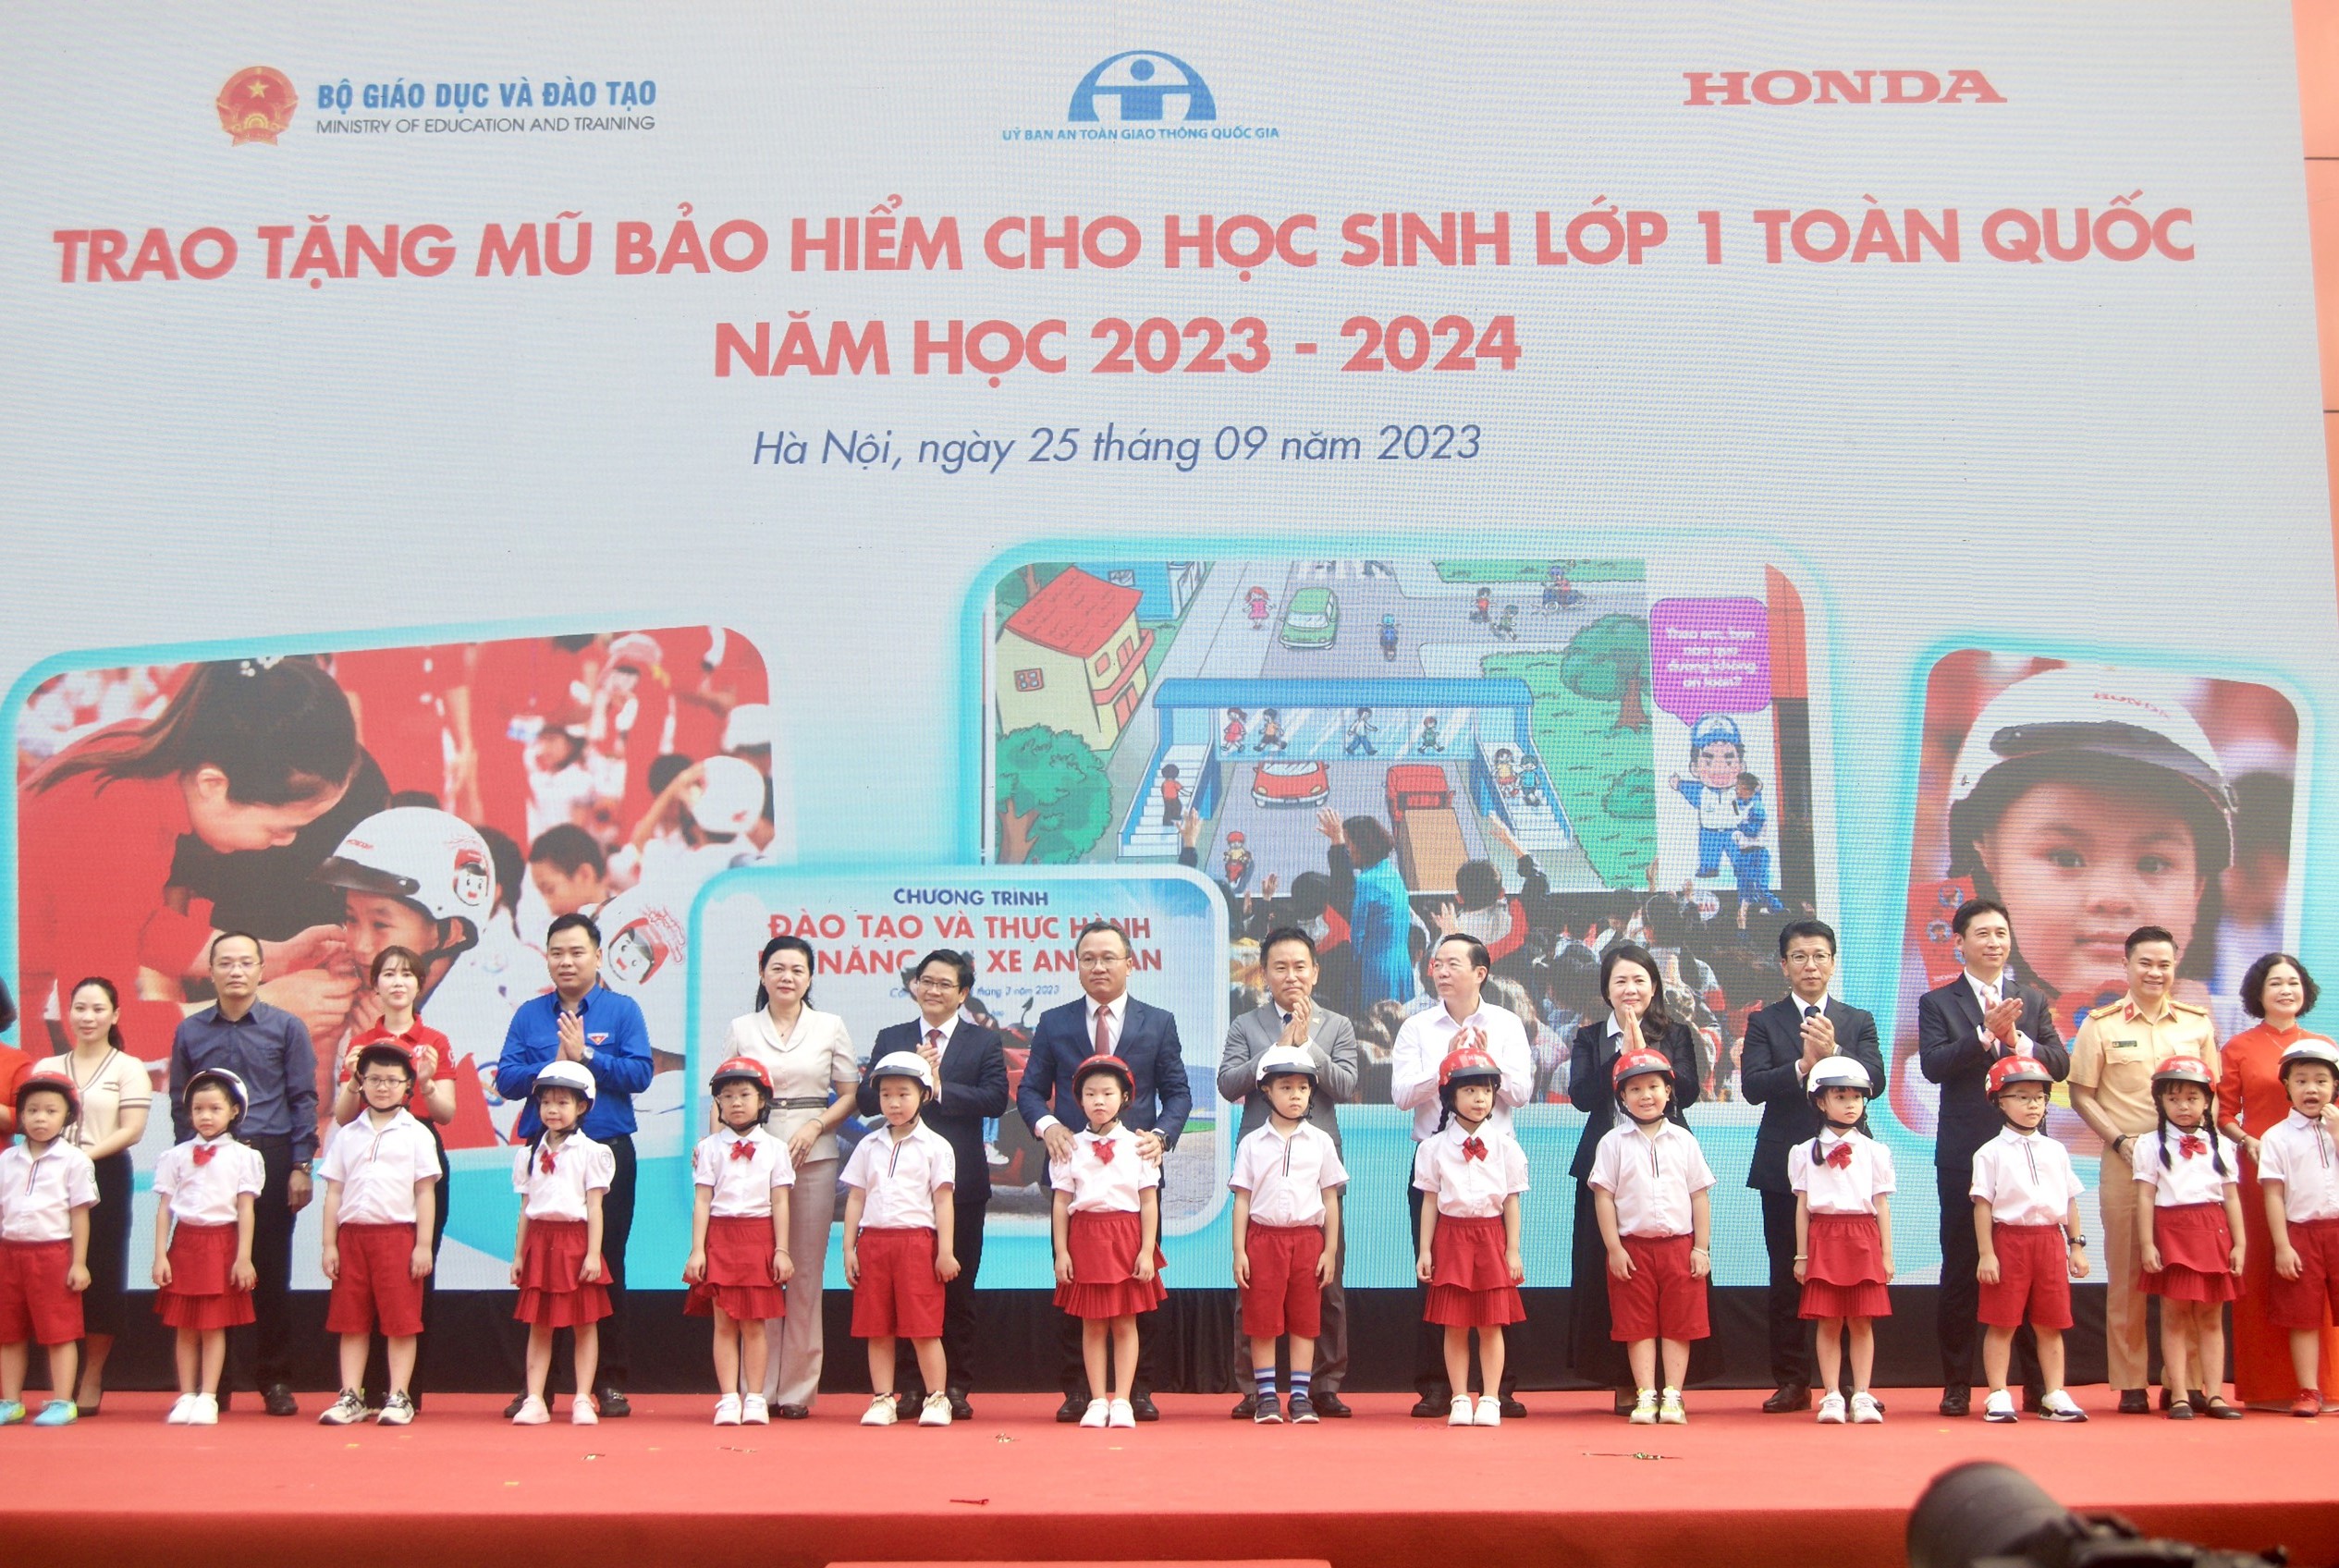 Honda trao tặng 2 triệu mũ bảo hiểm cho học sinh năm học 2023-2024